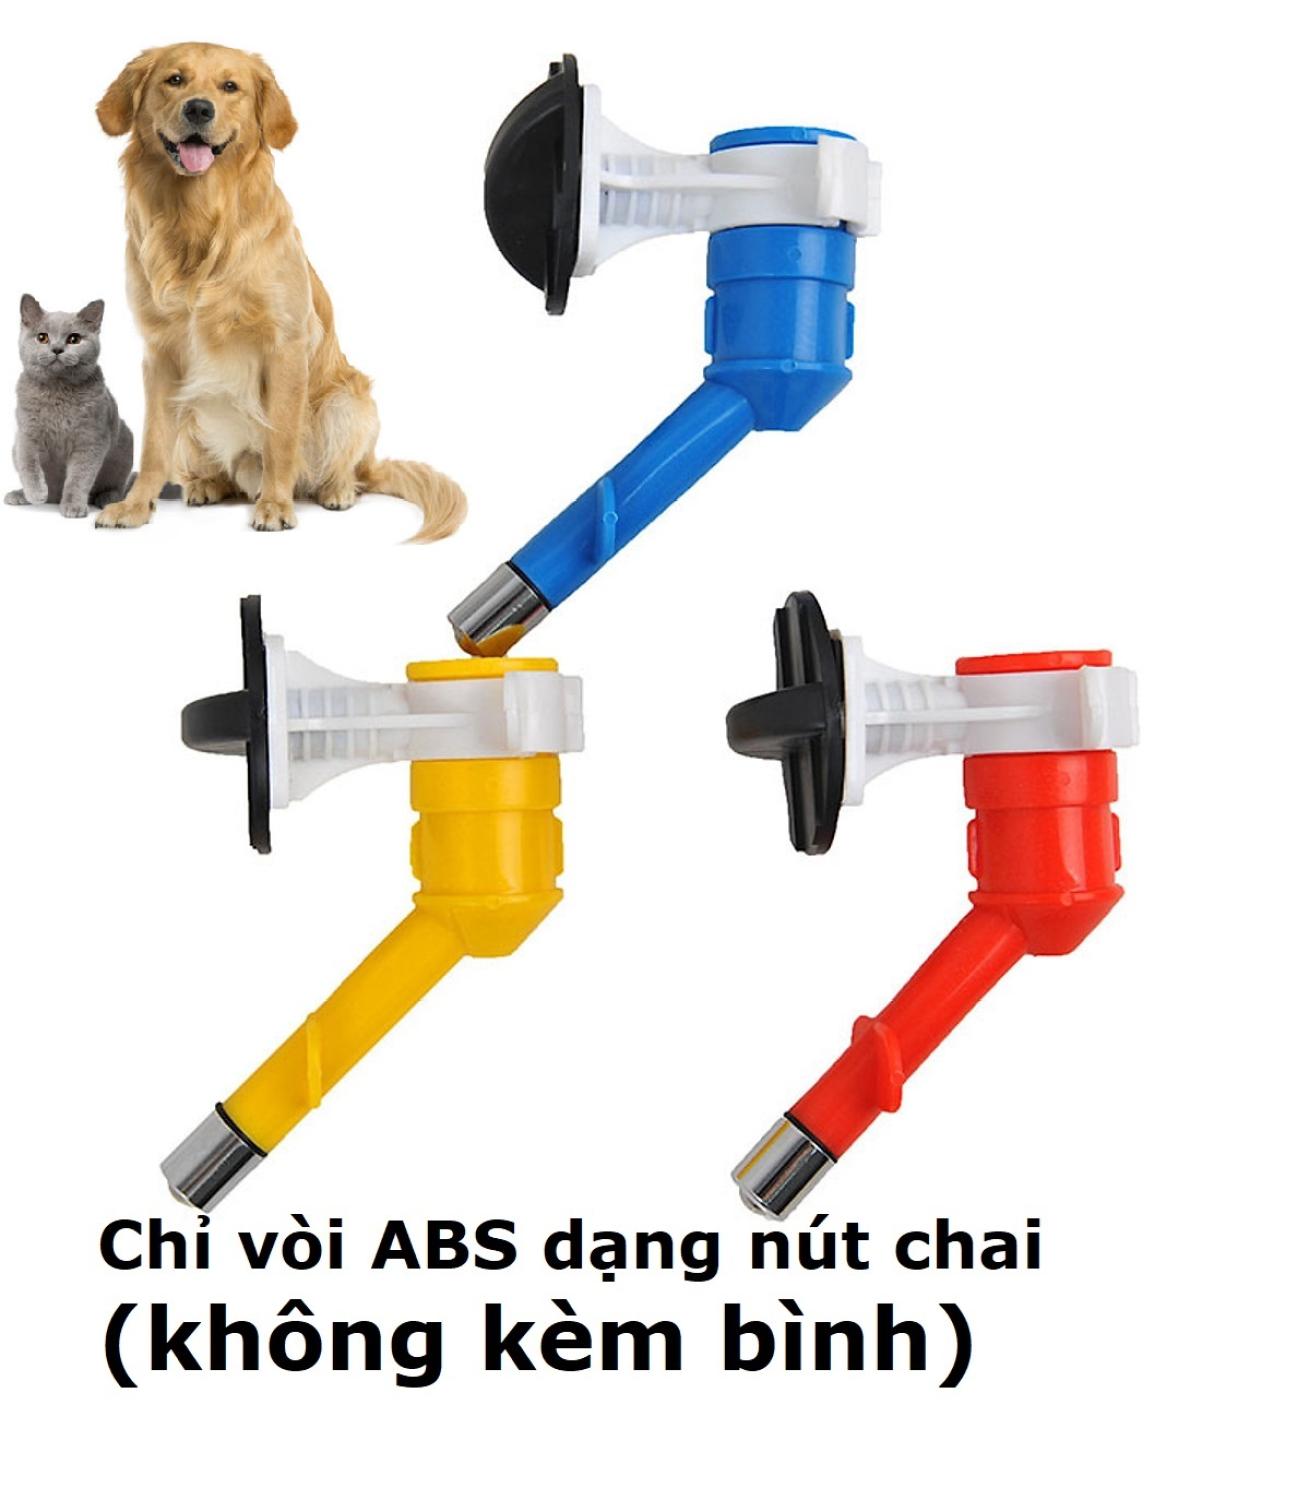 HCM- BÌNH TREO CHUỒNG chó mèo 4 loại bình uống nước tự động chó mèo dạng